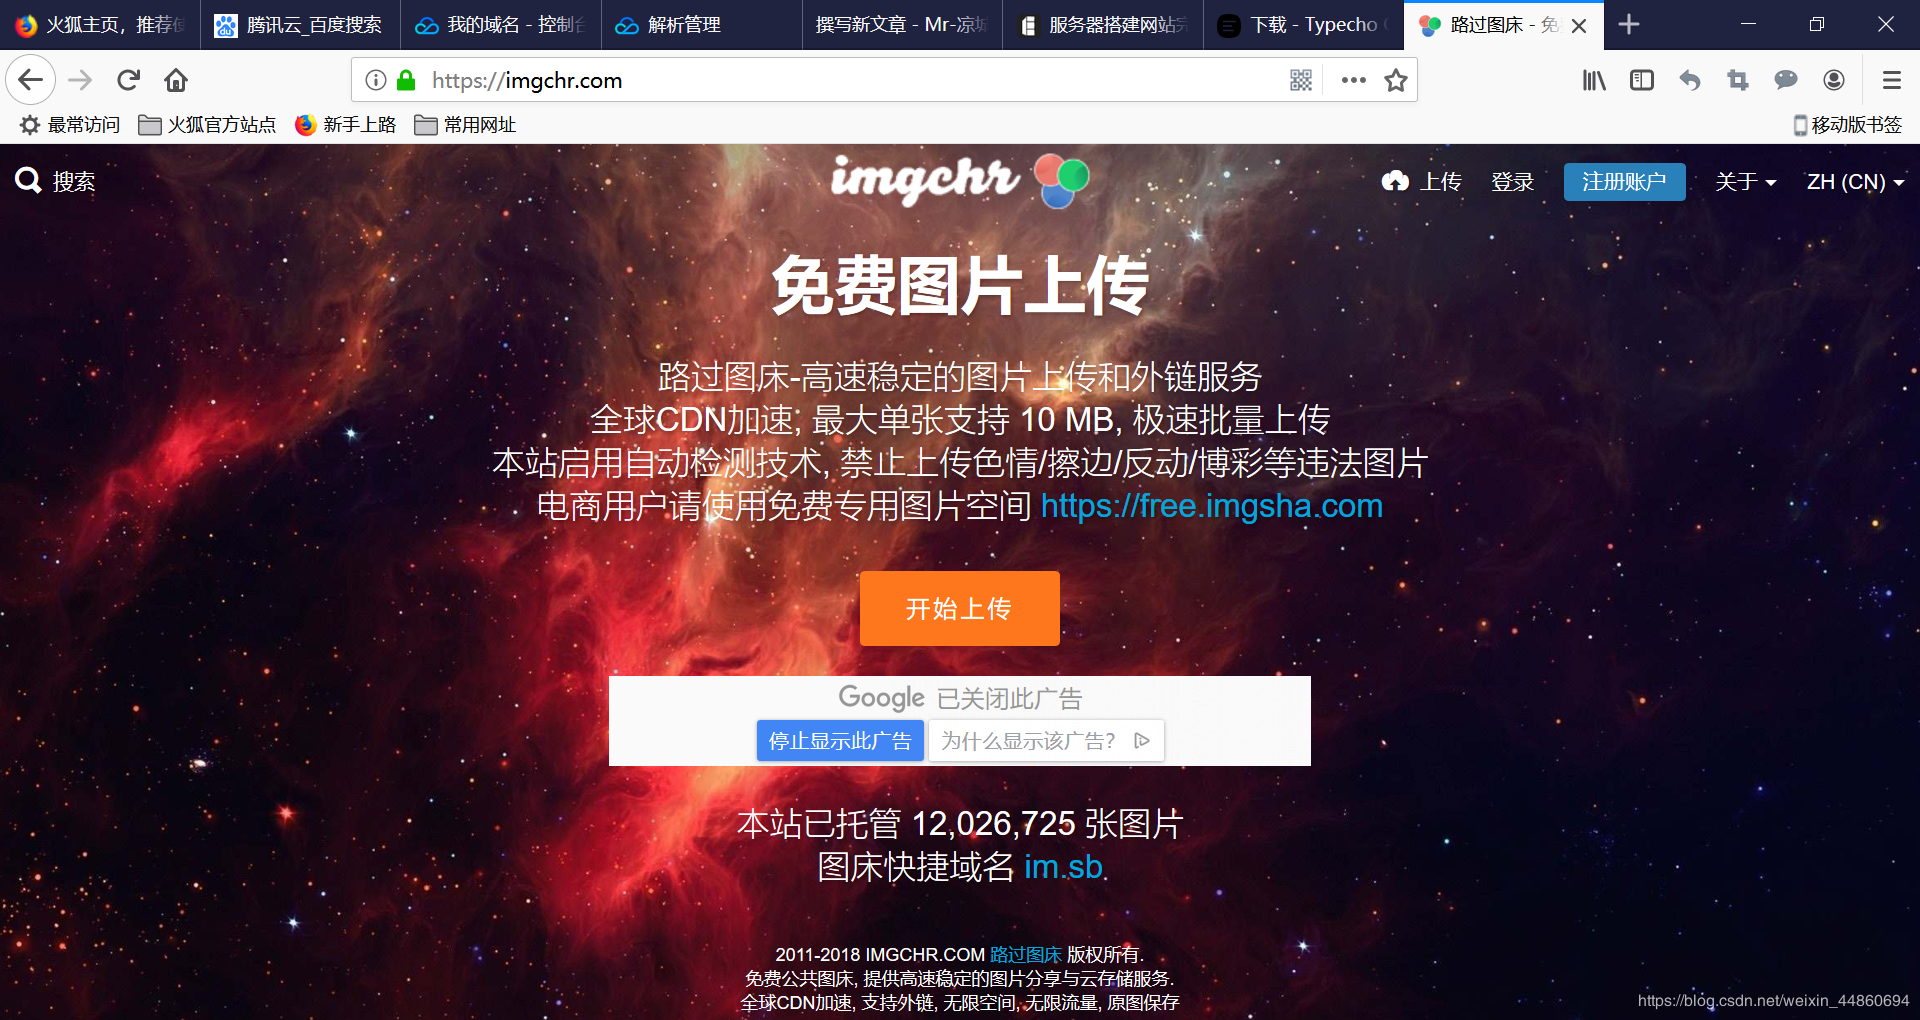 基于腾讯云服务器安装宝塔面板搭建Typecho博客网站（图文教程）